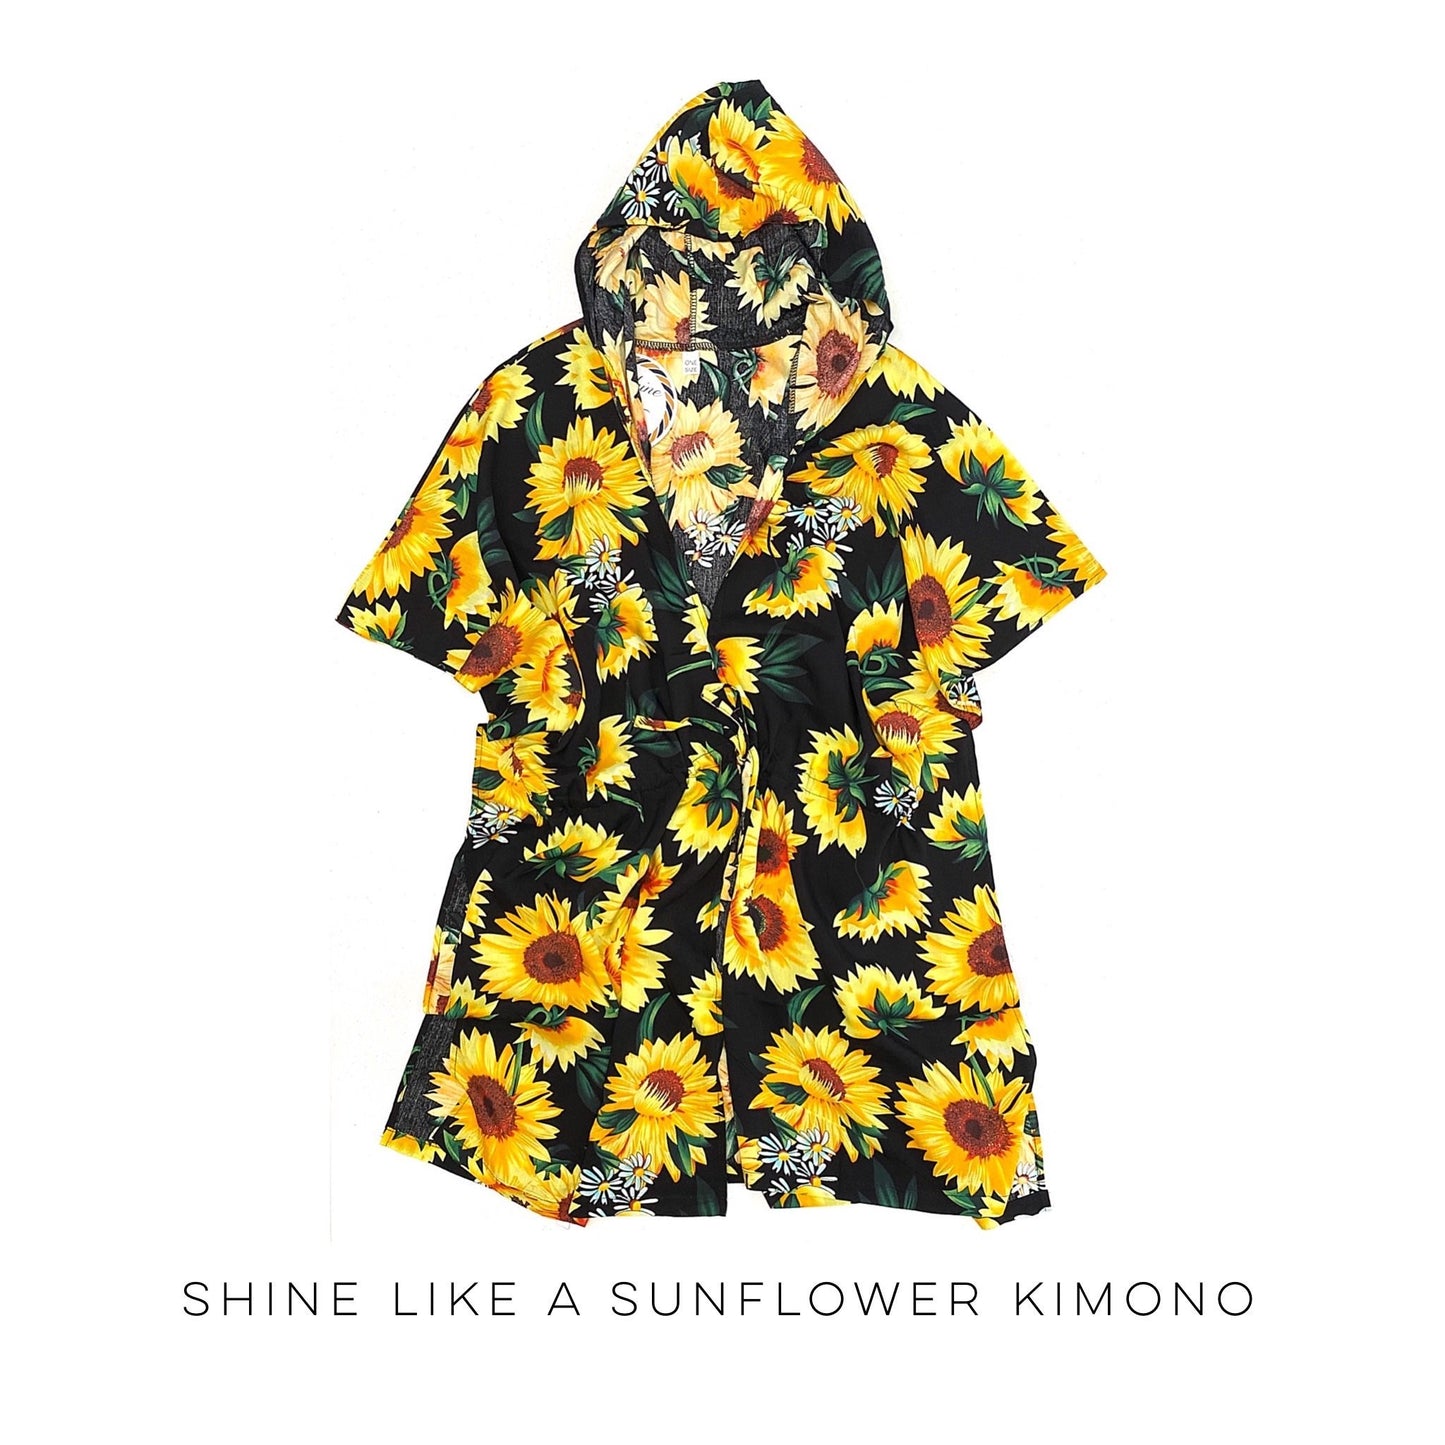 Shine Like a Sunflower Kimono!